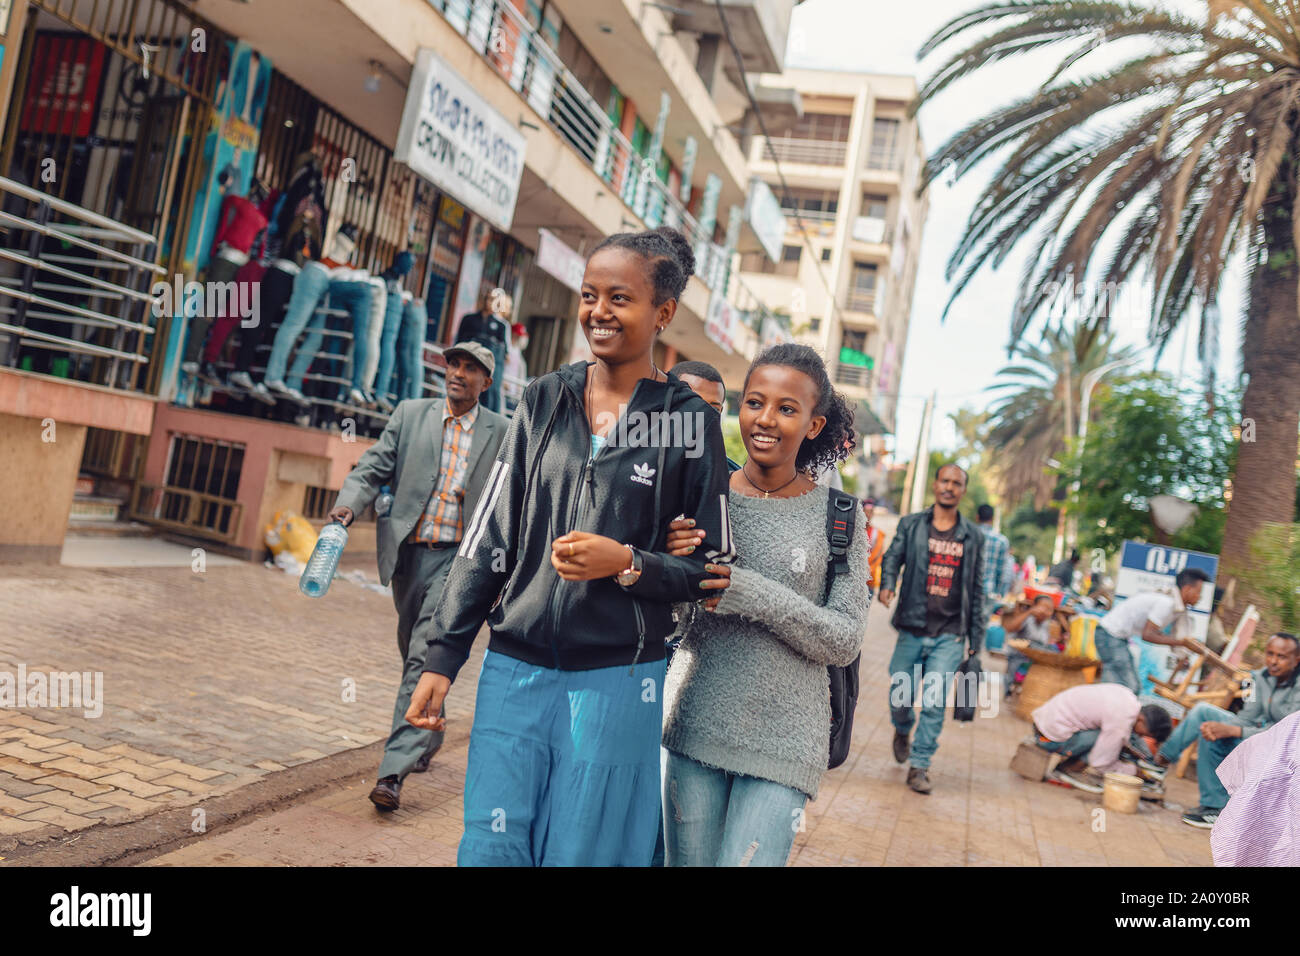 BAHIR DAR, ÉTHIOPIE, 21 avril. En 2019, les femmes éthiopiennes dans la rue pendant les vacances de Pâques. 21 avril. 2019, Bahir Dar, Ethiopie Banque D'Images